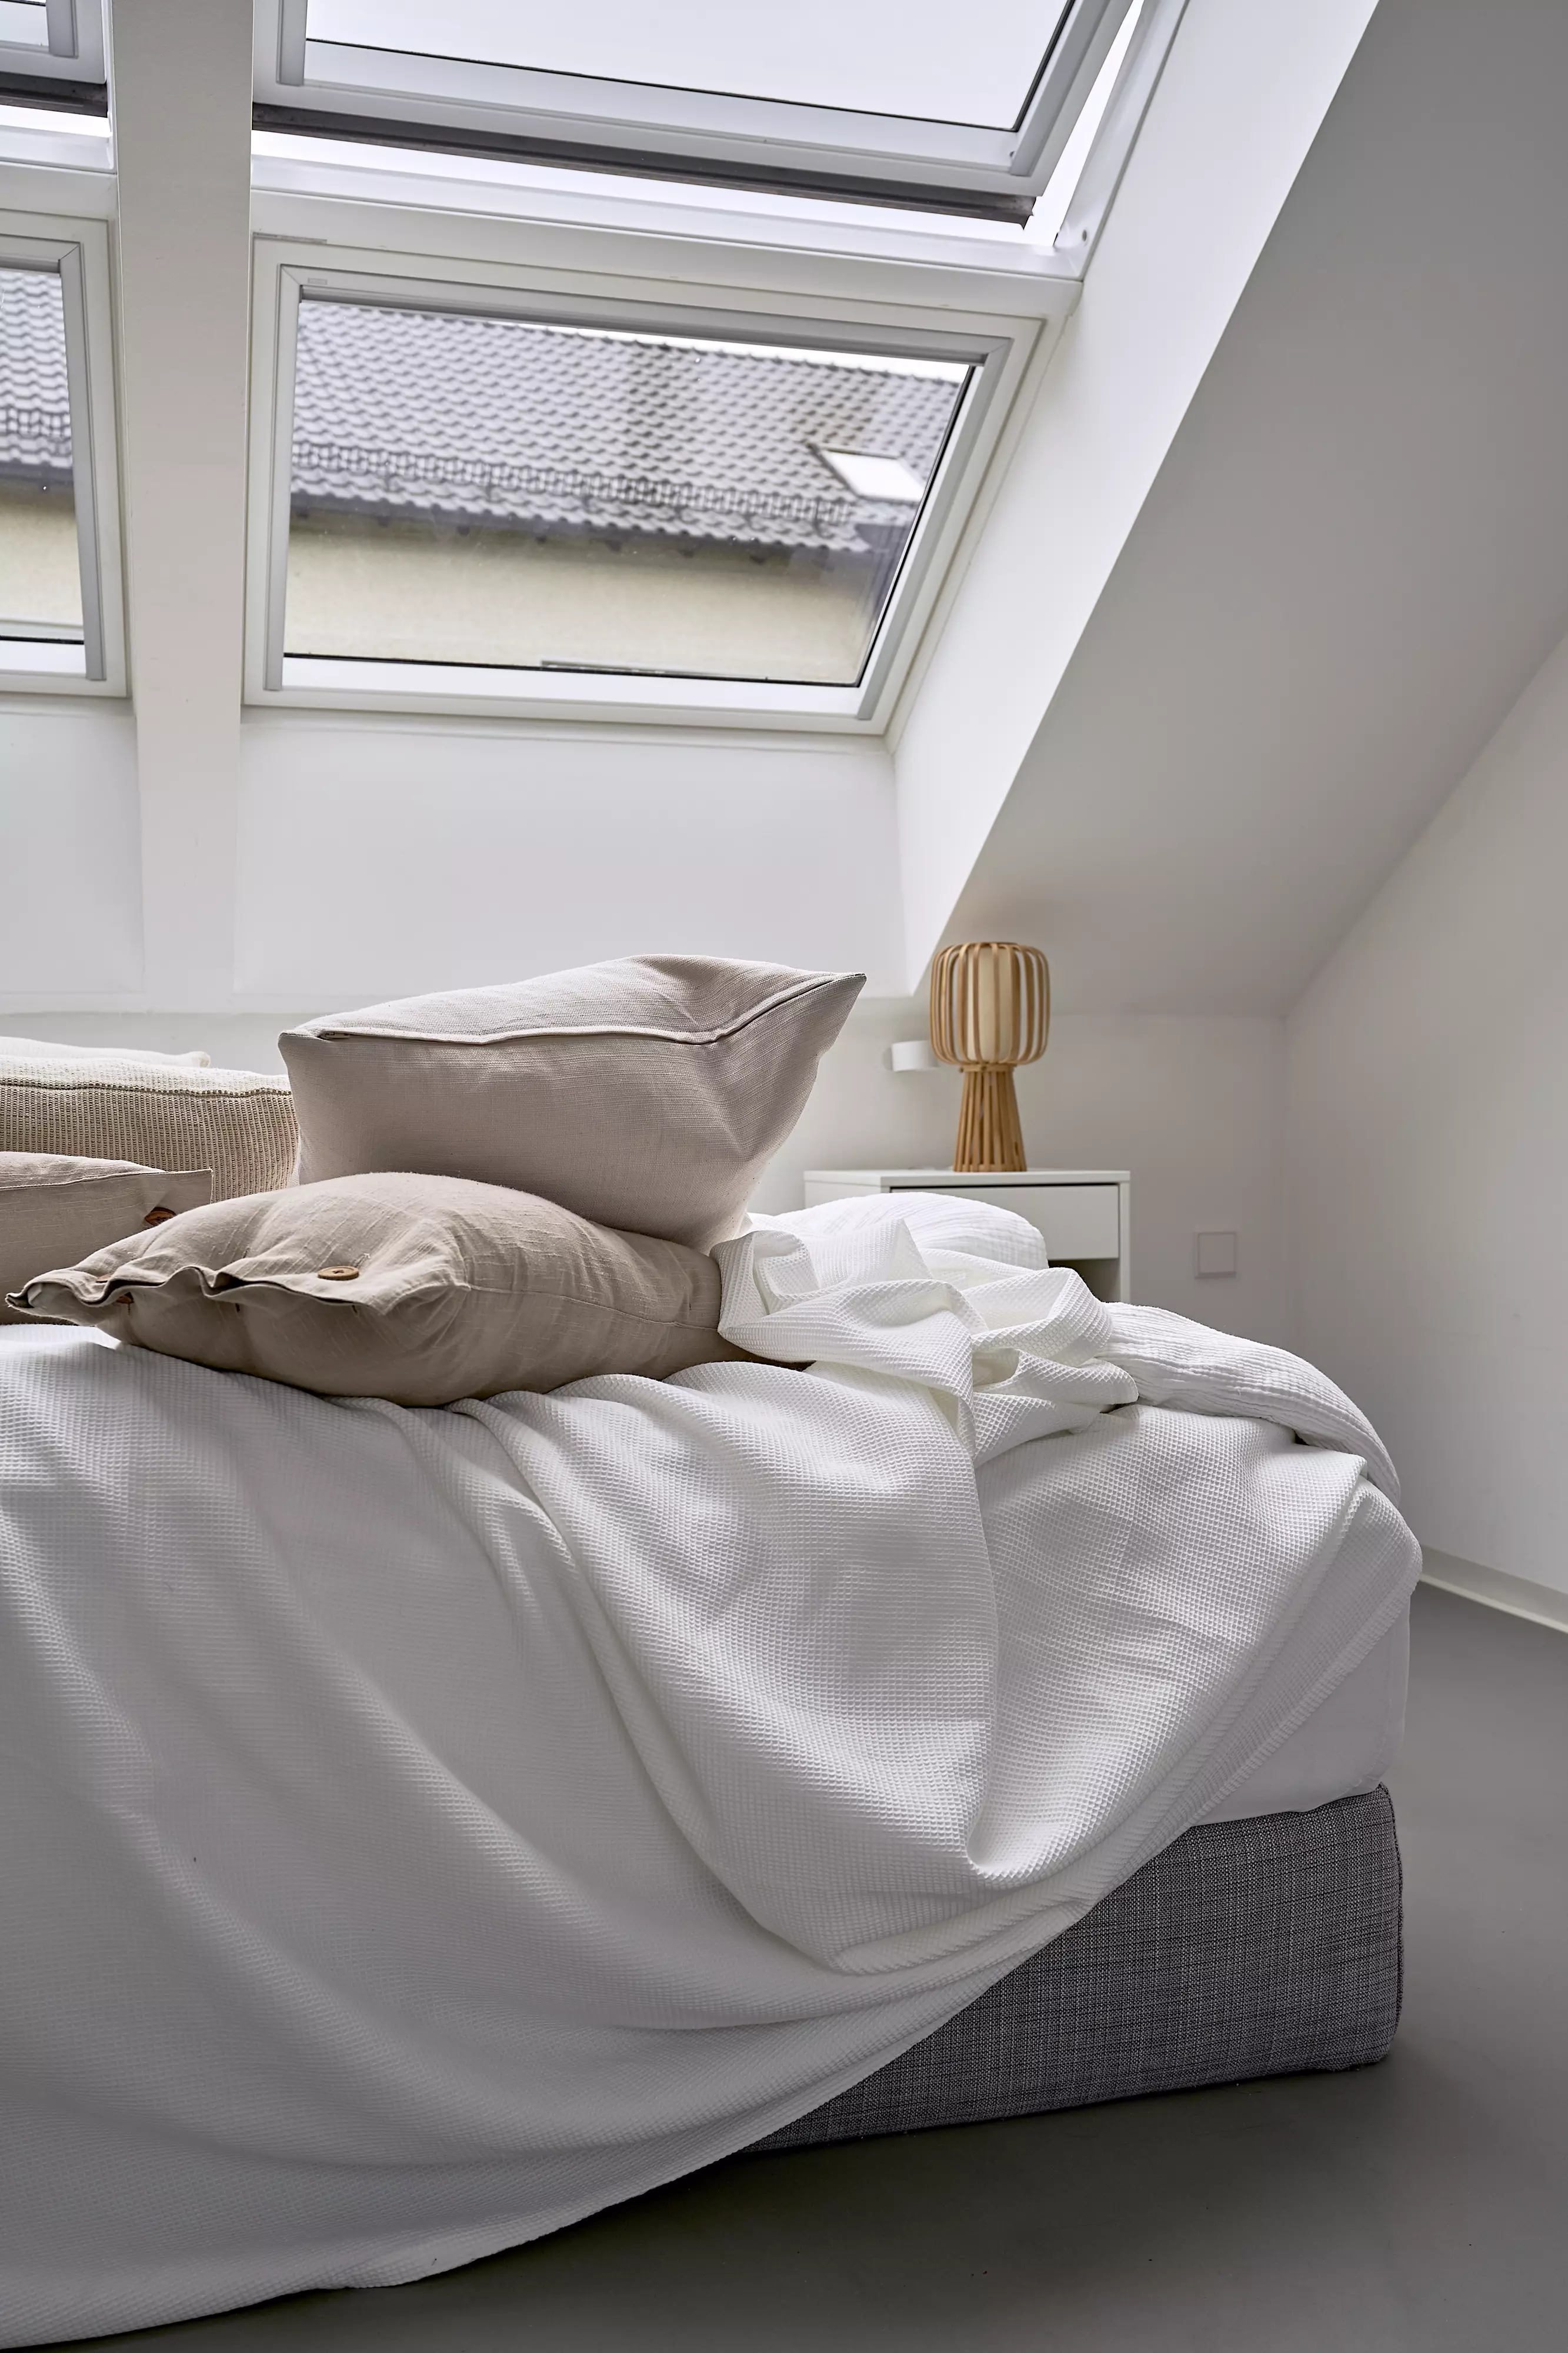 Gemütliches Schlafzimmer mit Bett und Kissen unter natürlichem Licht von VELUX Dachflächenfenstern.